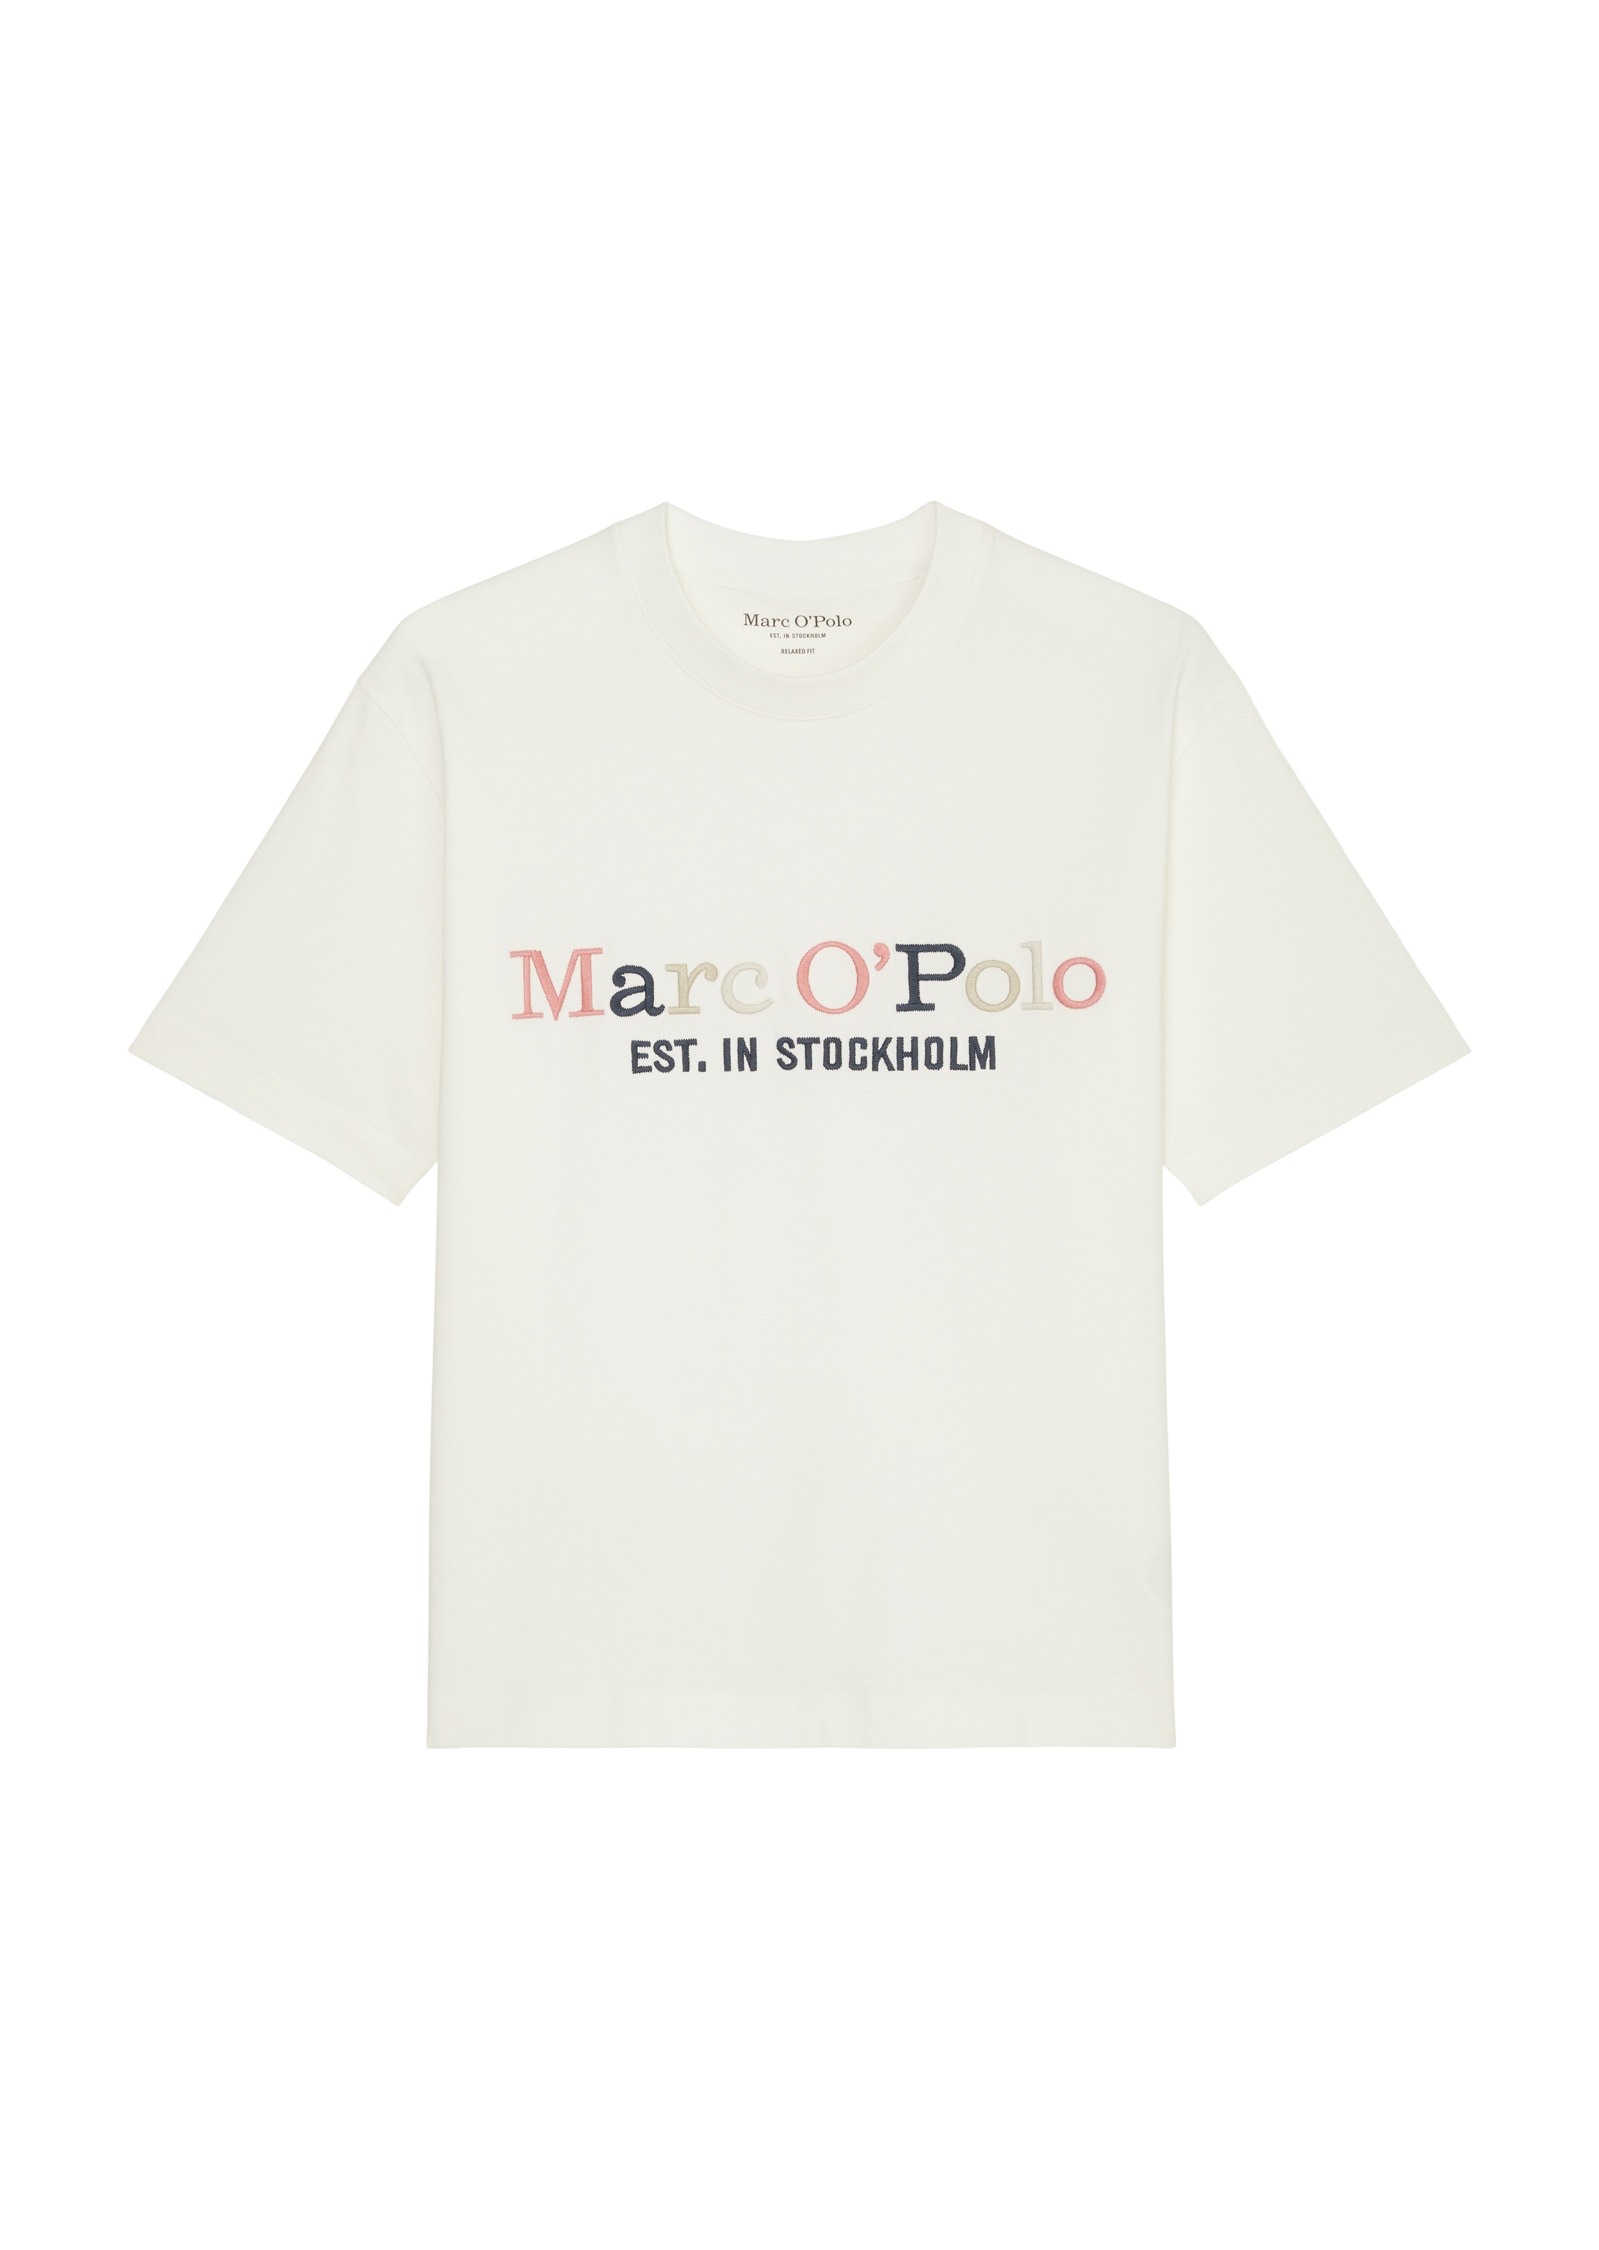 Marc O'Polo T-Shirt, mehrfarbiger Print